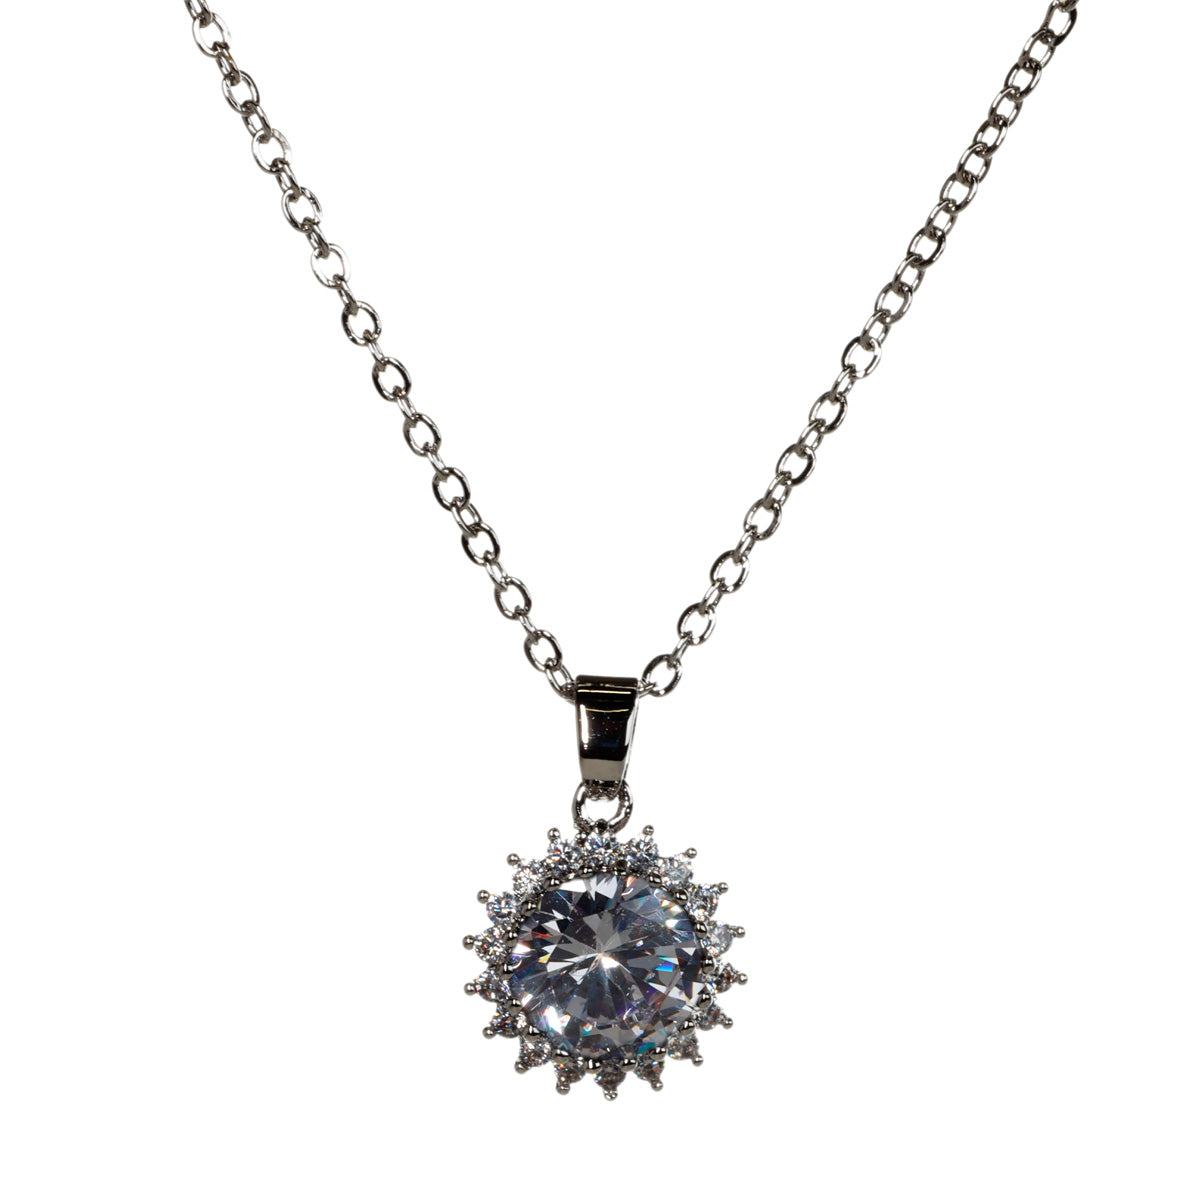 A glittering pendant necklace 46,5cm +5cm